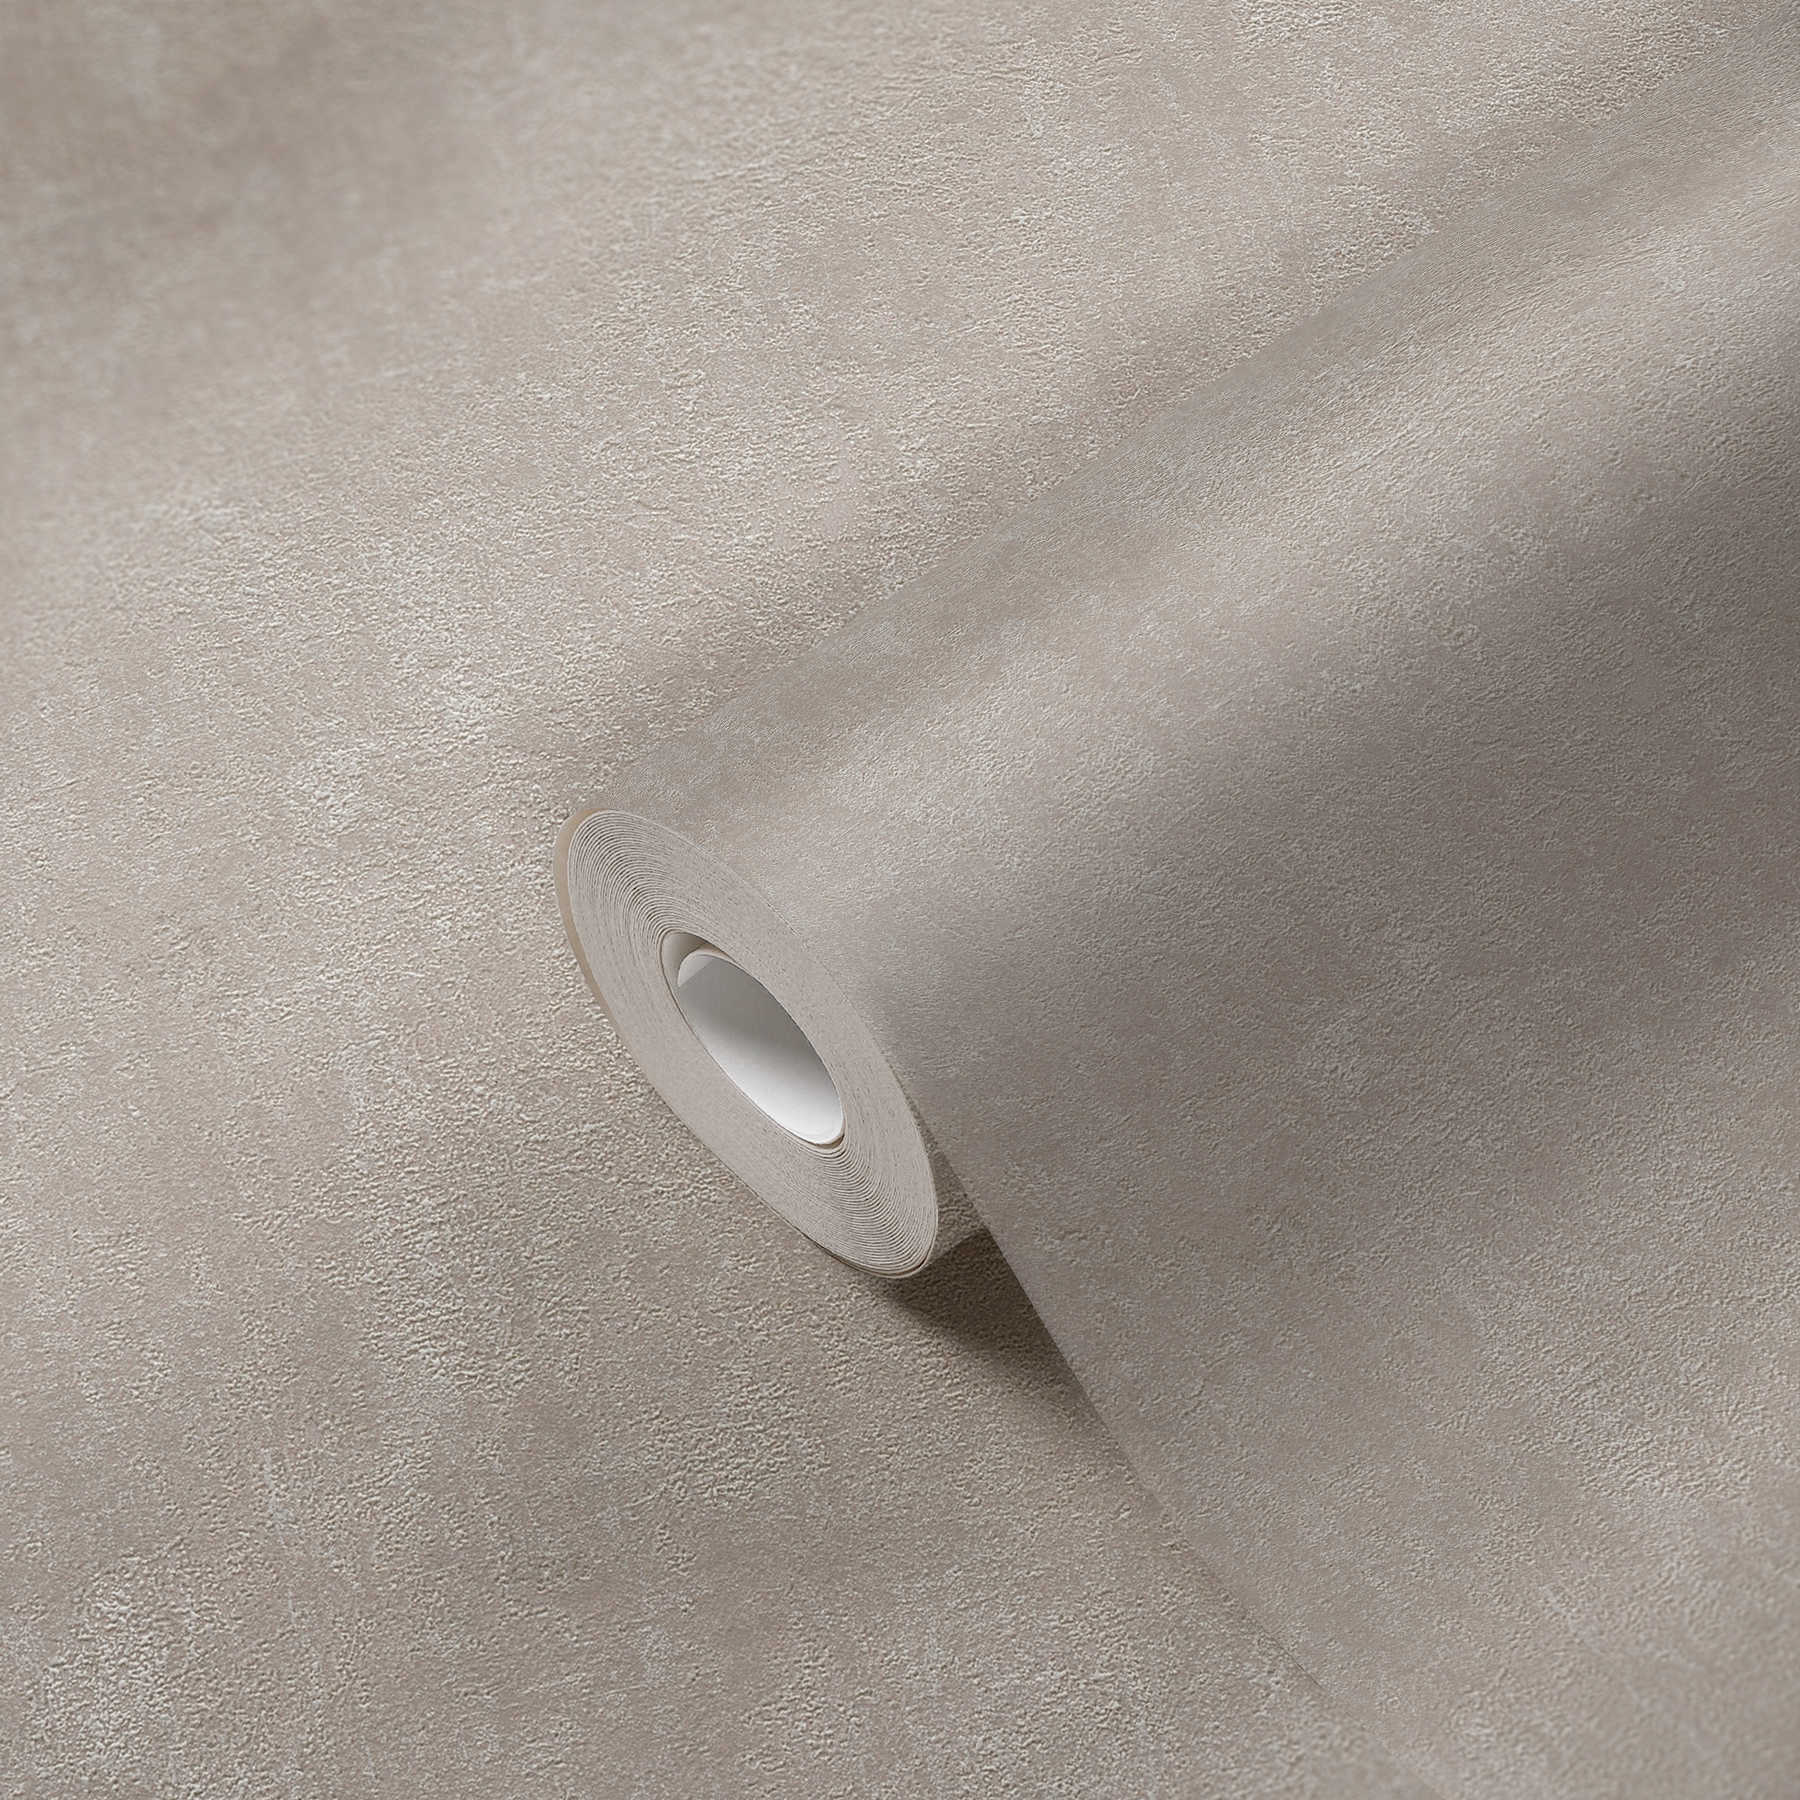             Papel pintado no tejido de seda gris mate con diseño de aspecto de piedra
        